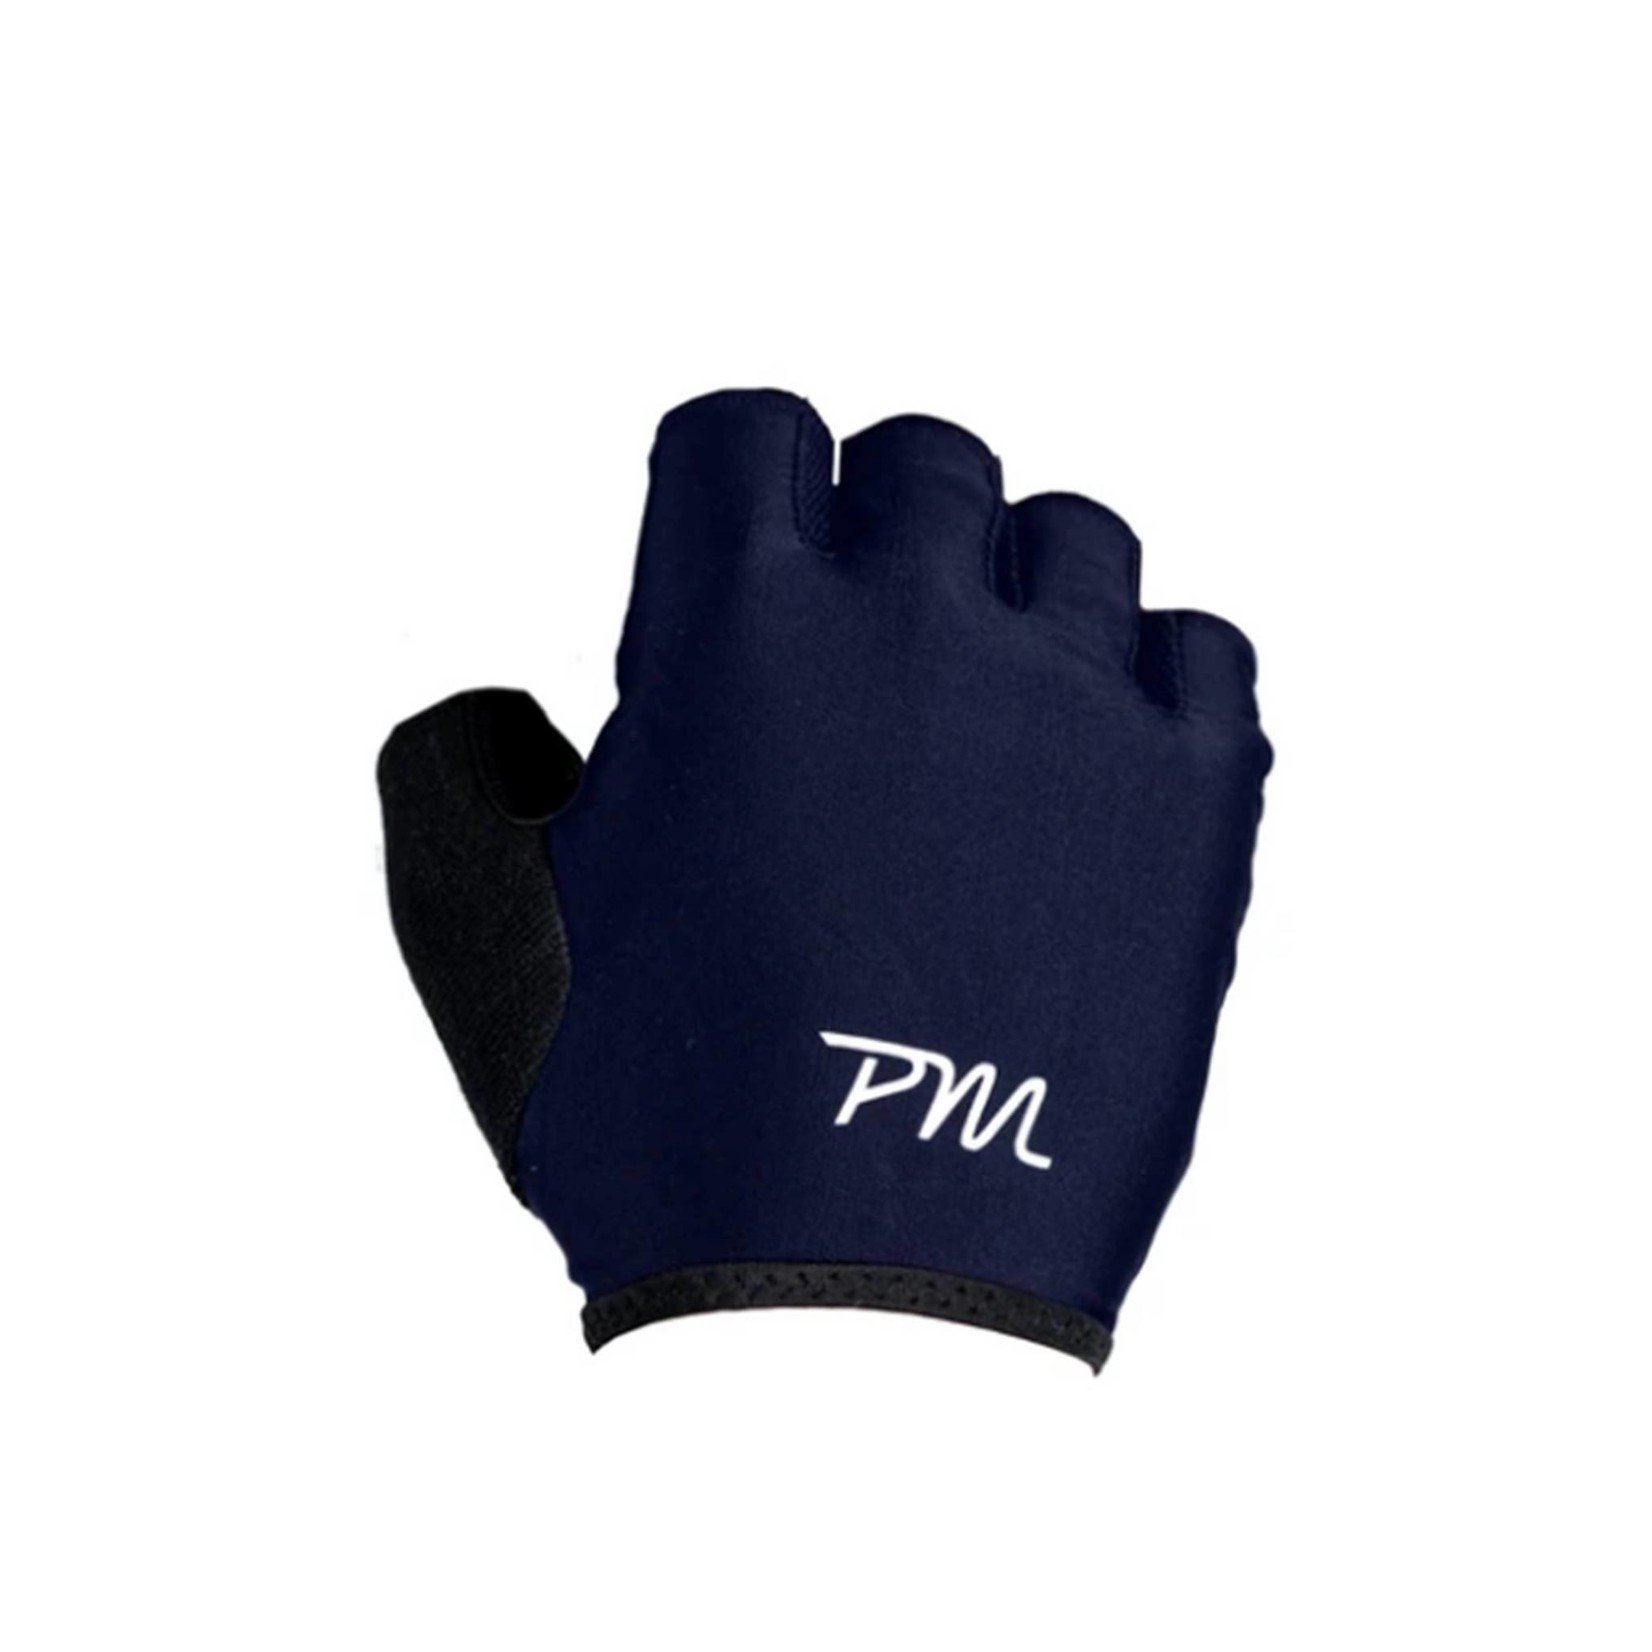 Pedal Mafia Short Finger Cycling Gloves Navy/White